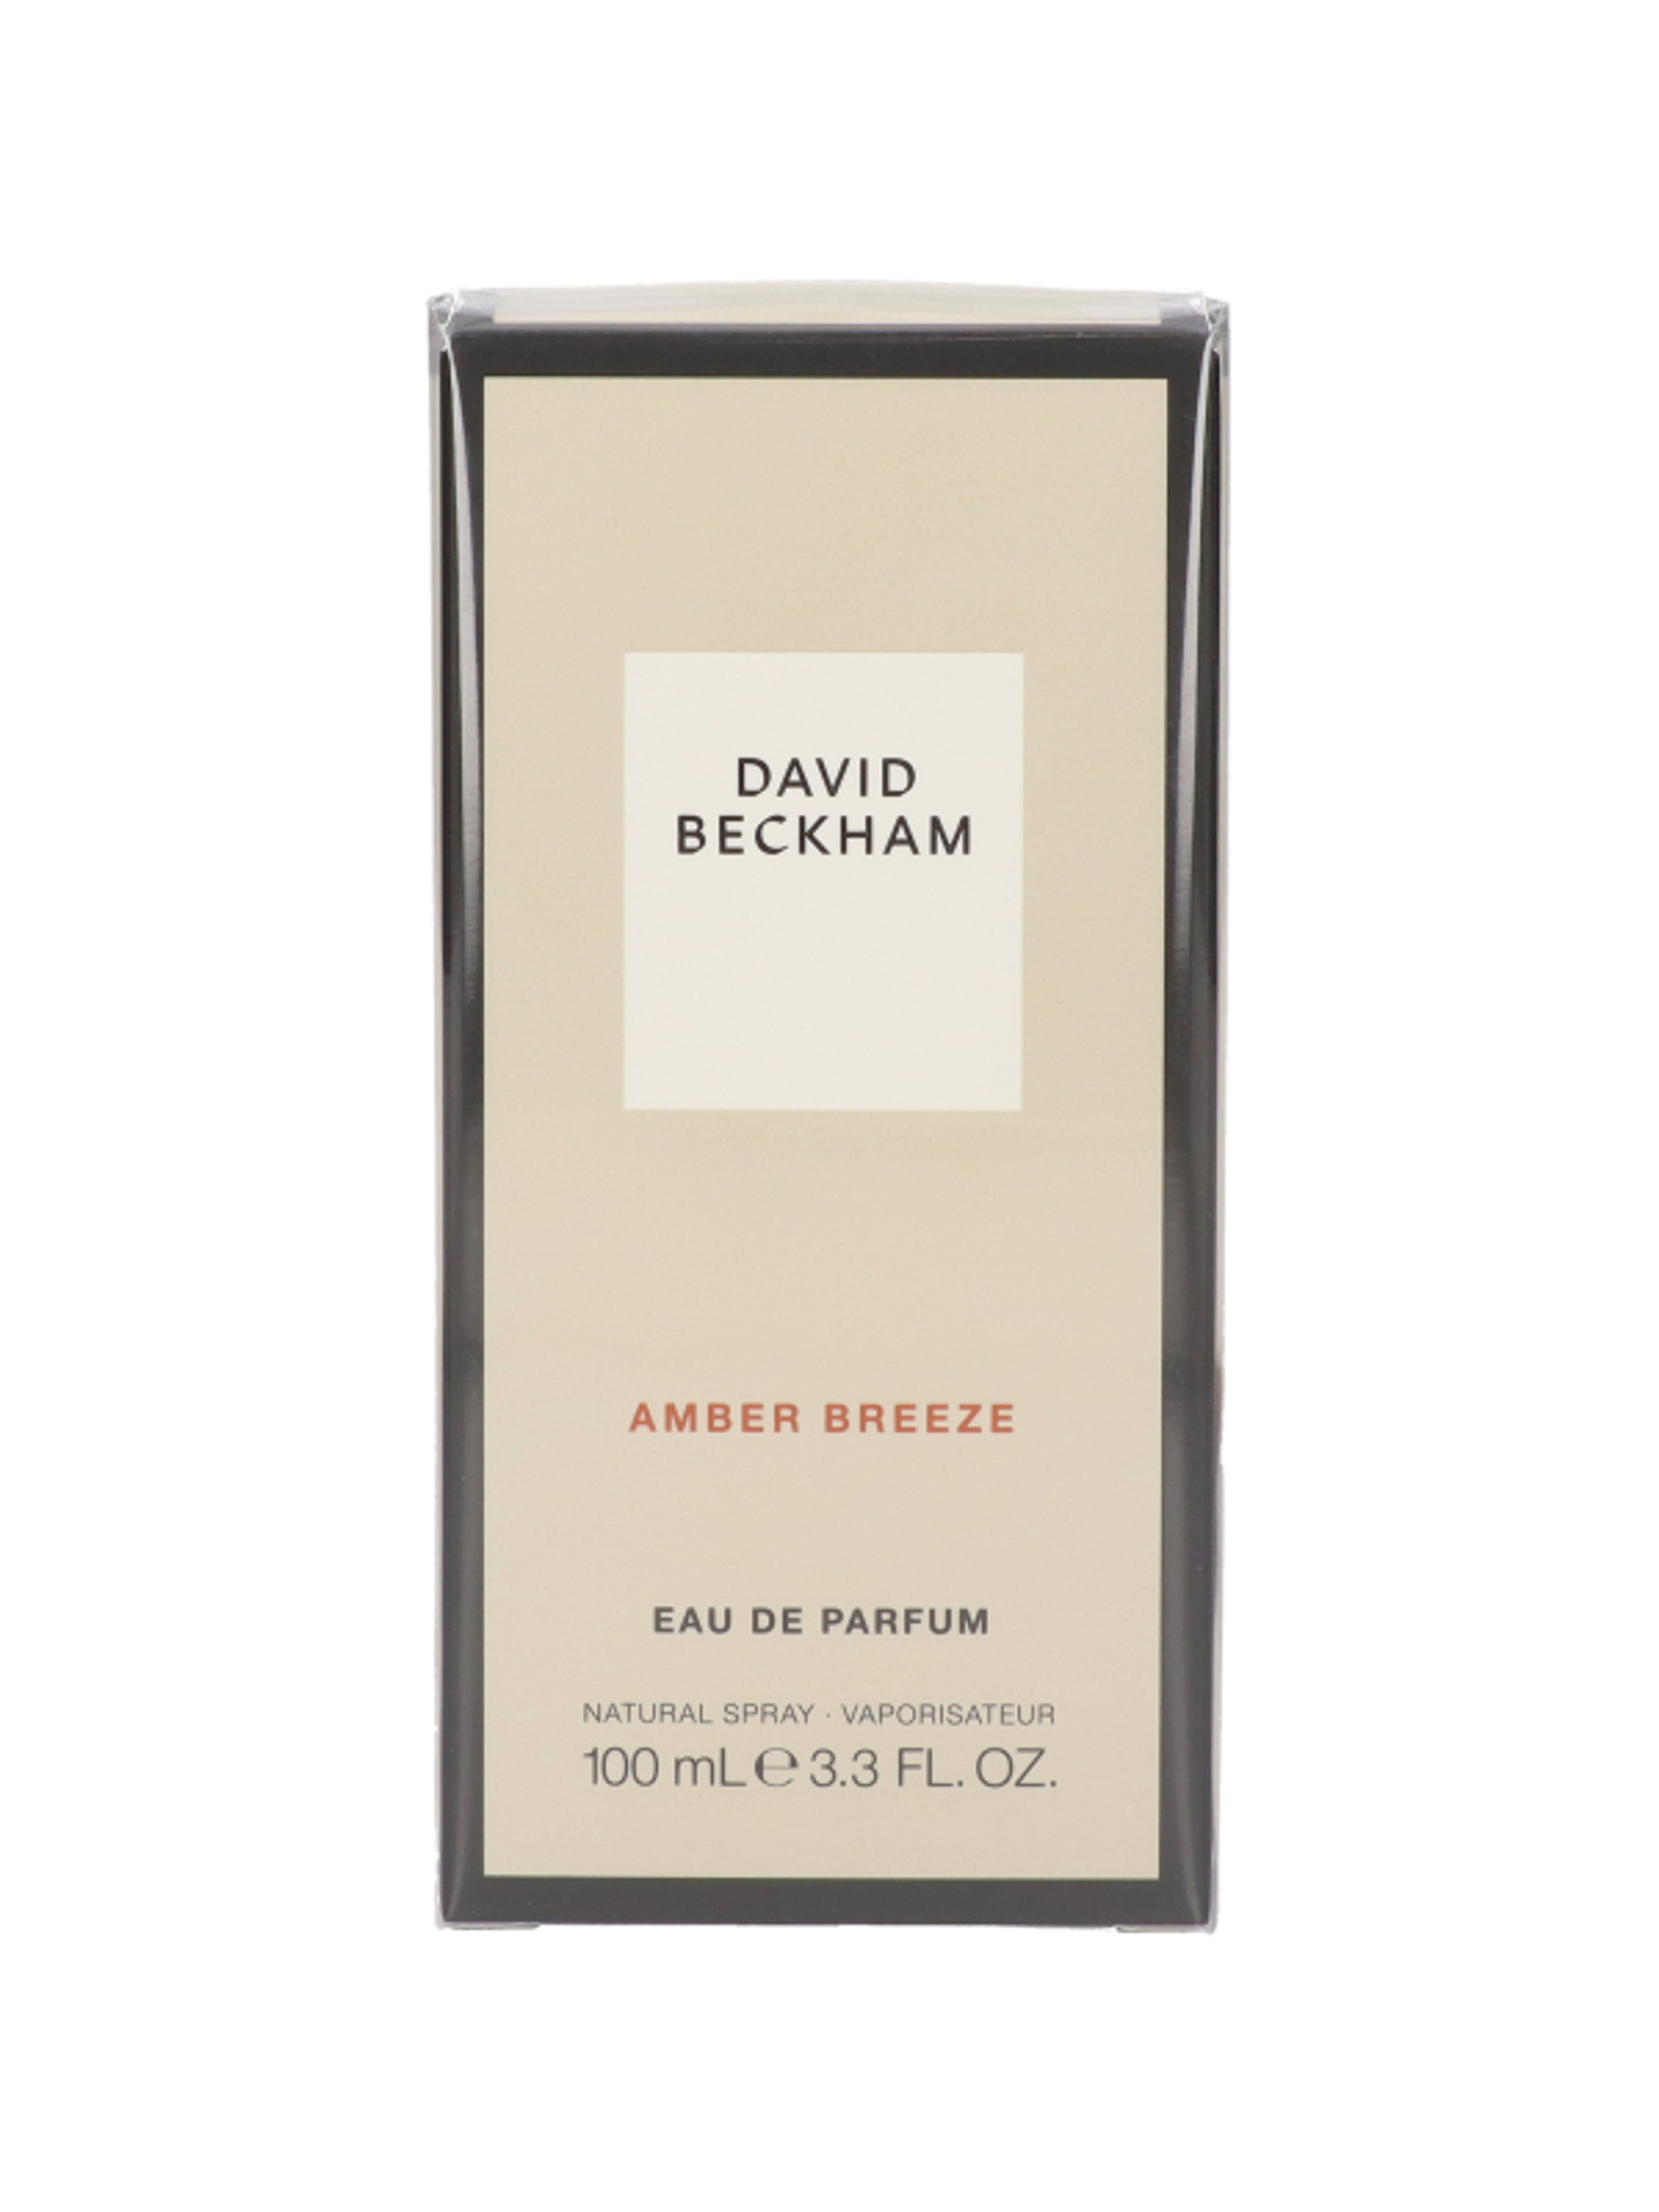 David Beckham Amber Breeze Eau de Parfum - 100 ml